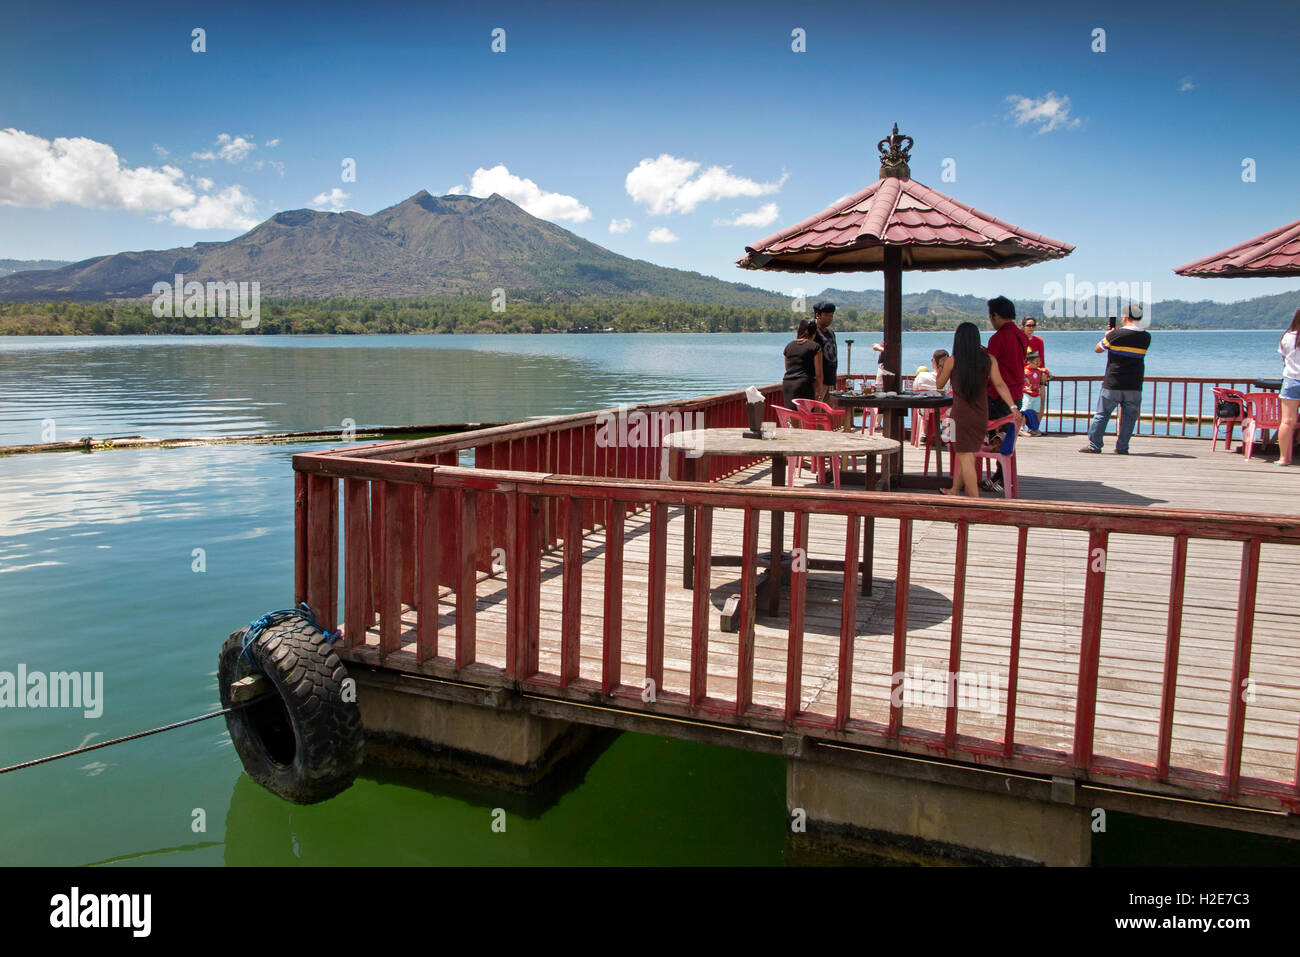 Indonesien, Bali, Kedisan, Gunung Batur aus schwimmenden Hotel am inneren Kratersee, Kunden auf Ponton Stockfoto